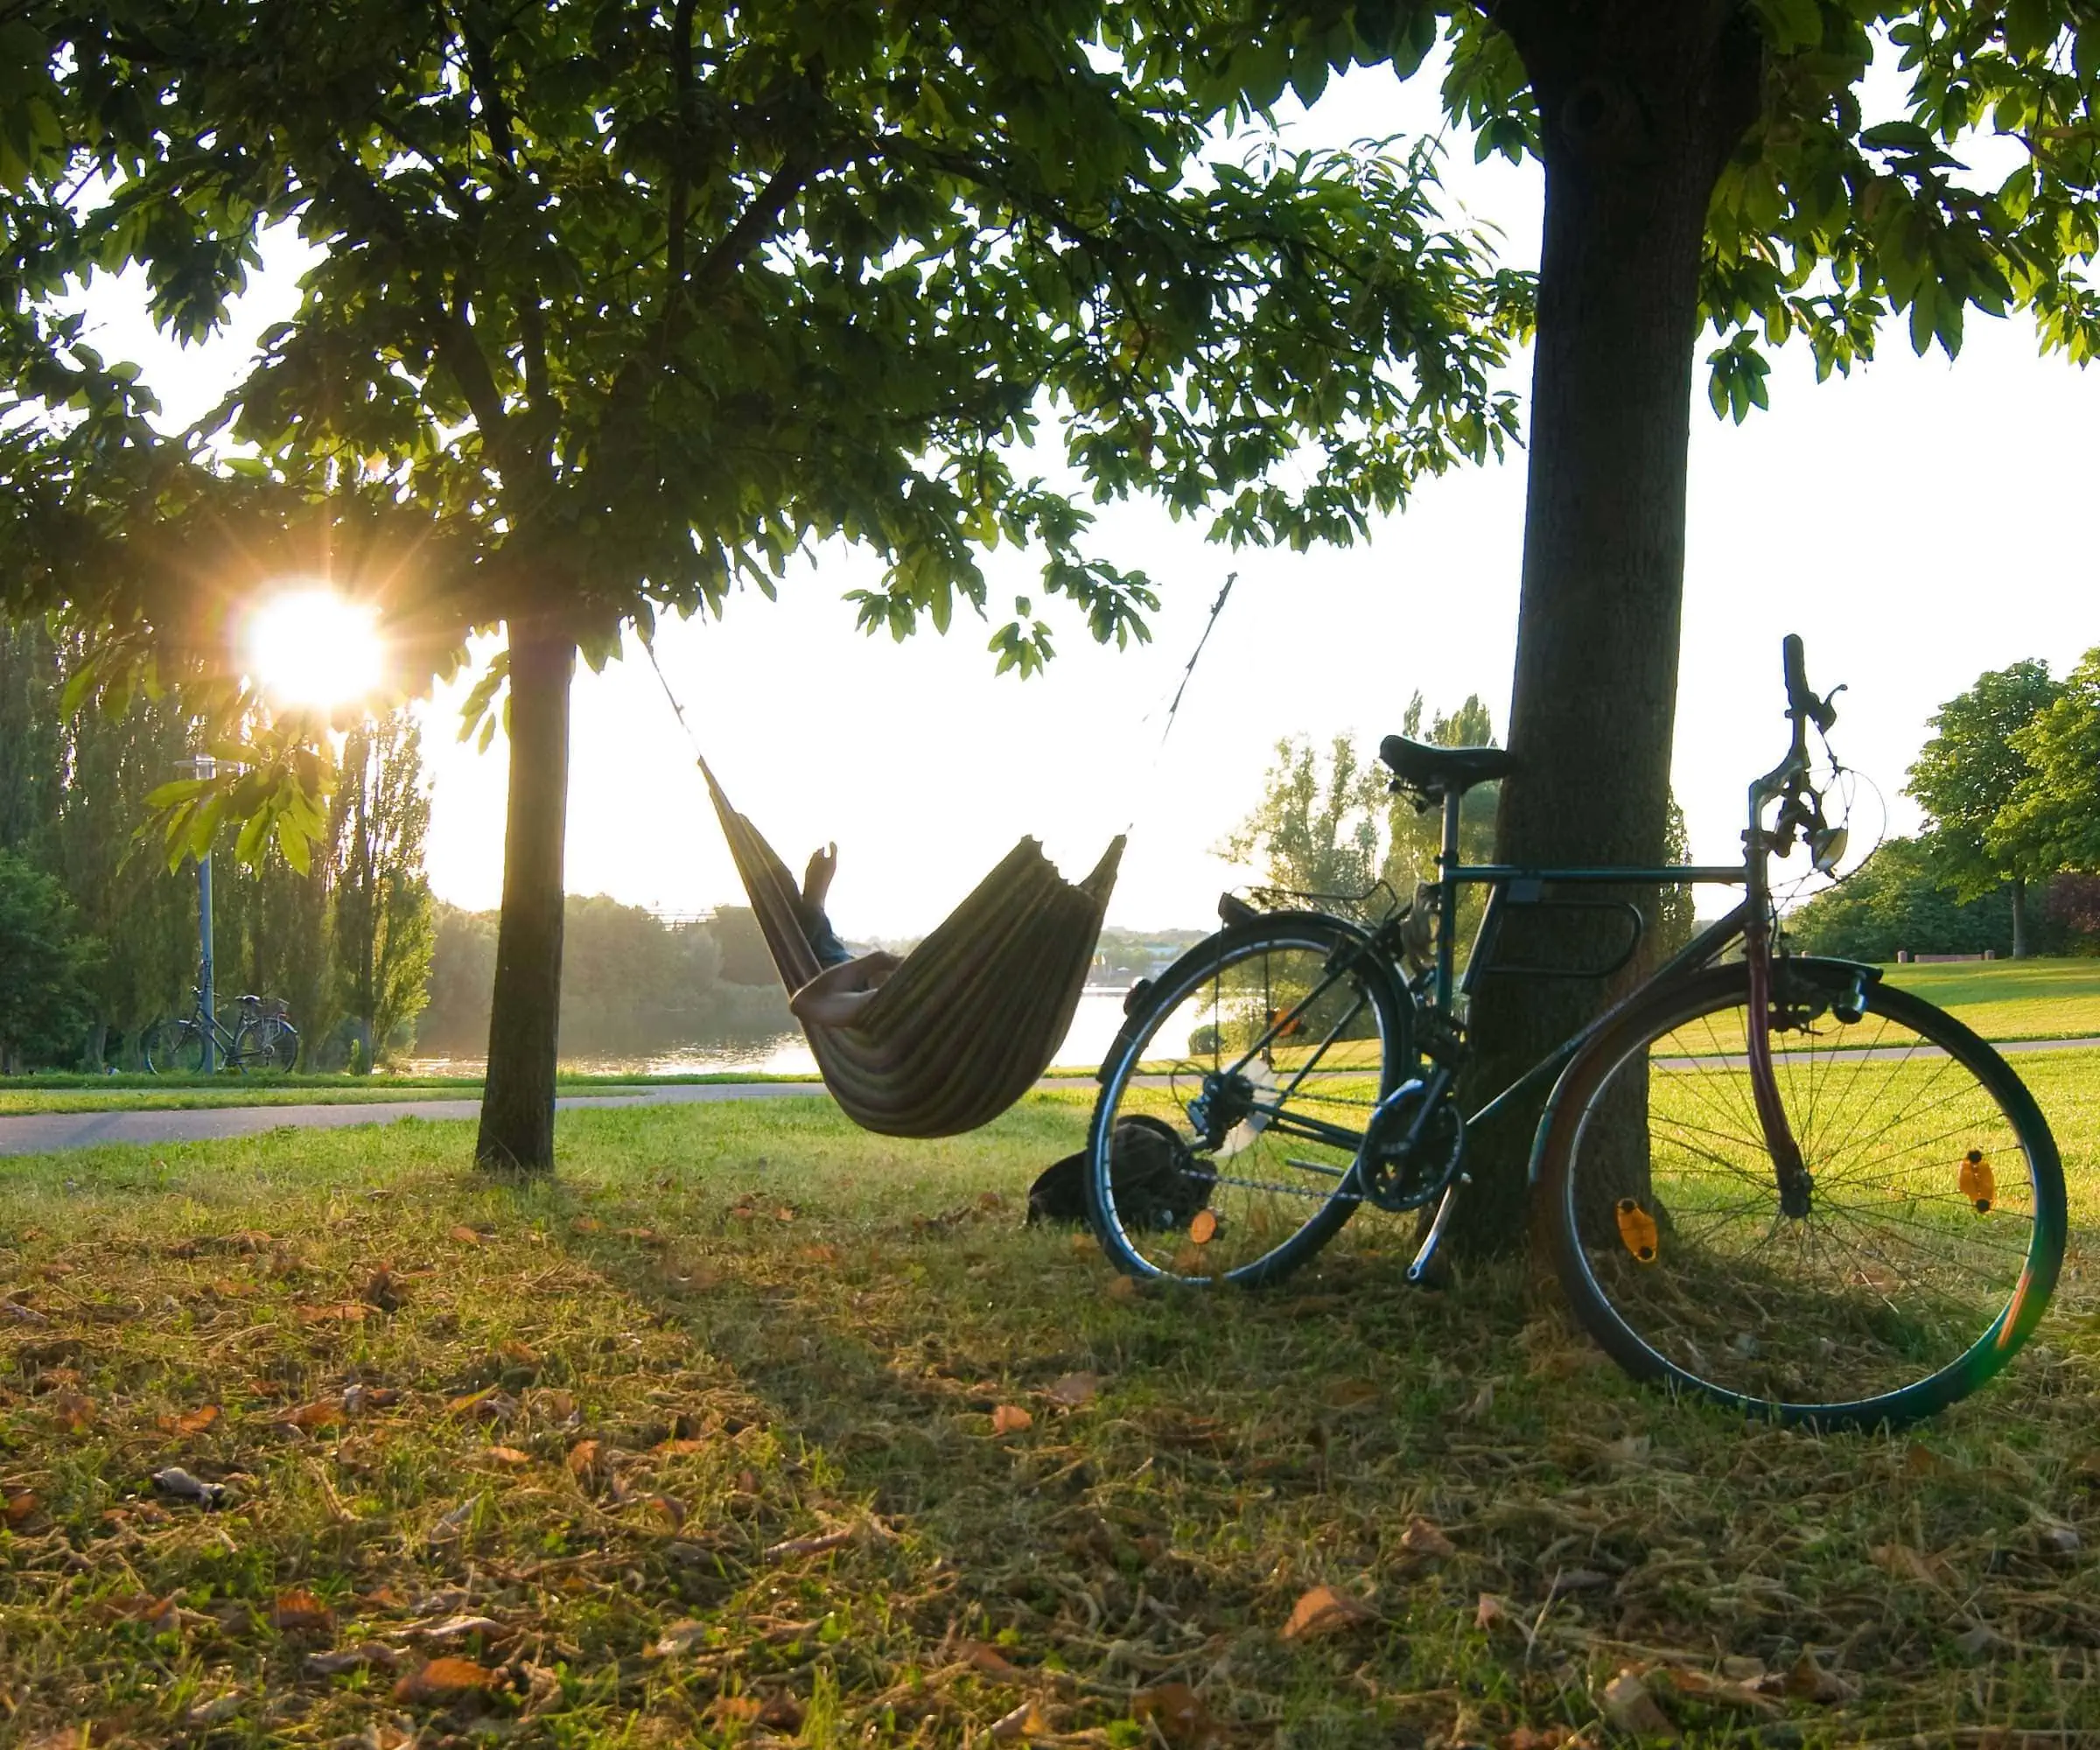 Sich Gutes tun und kleine Auszeiten gönnen – Radeln und Entspannen in der Natur – nachhaltige Reiseideen // HIMBEER